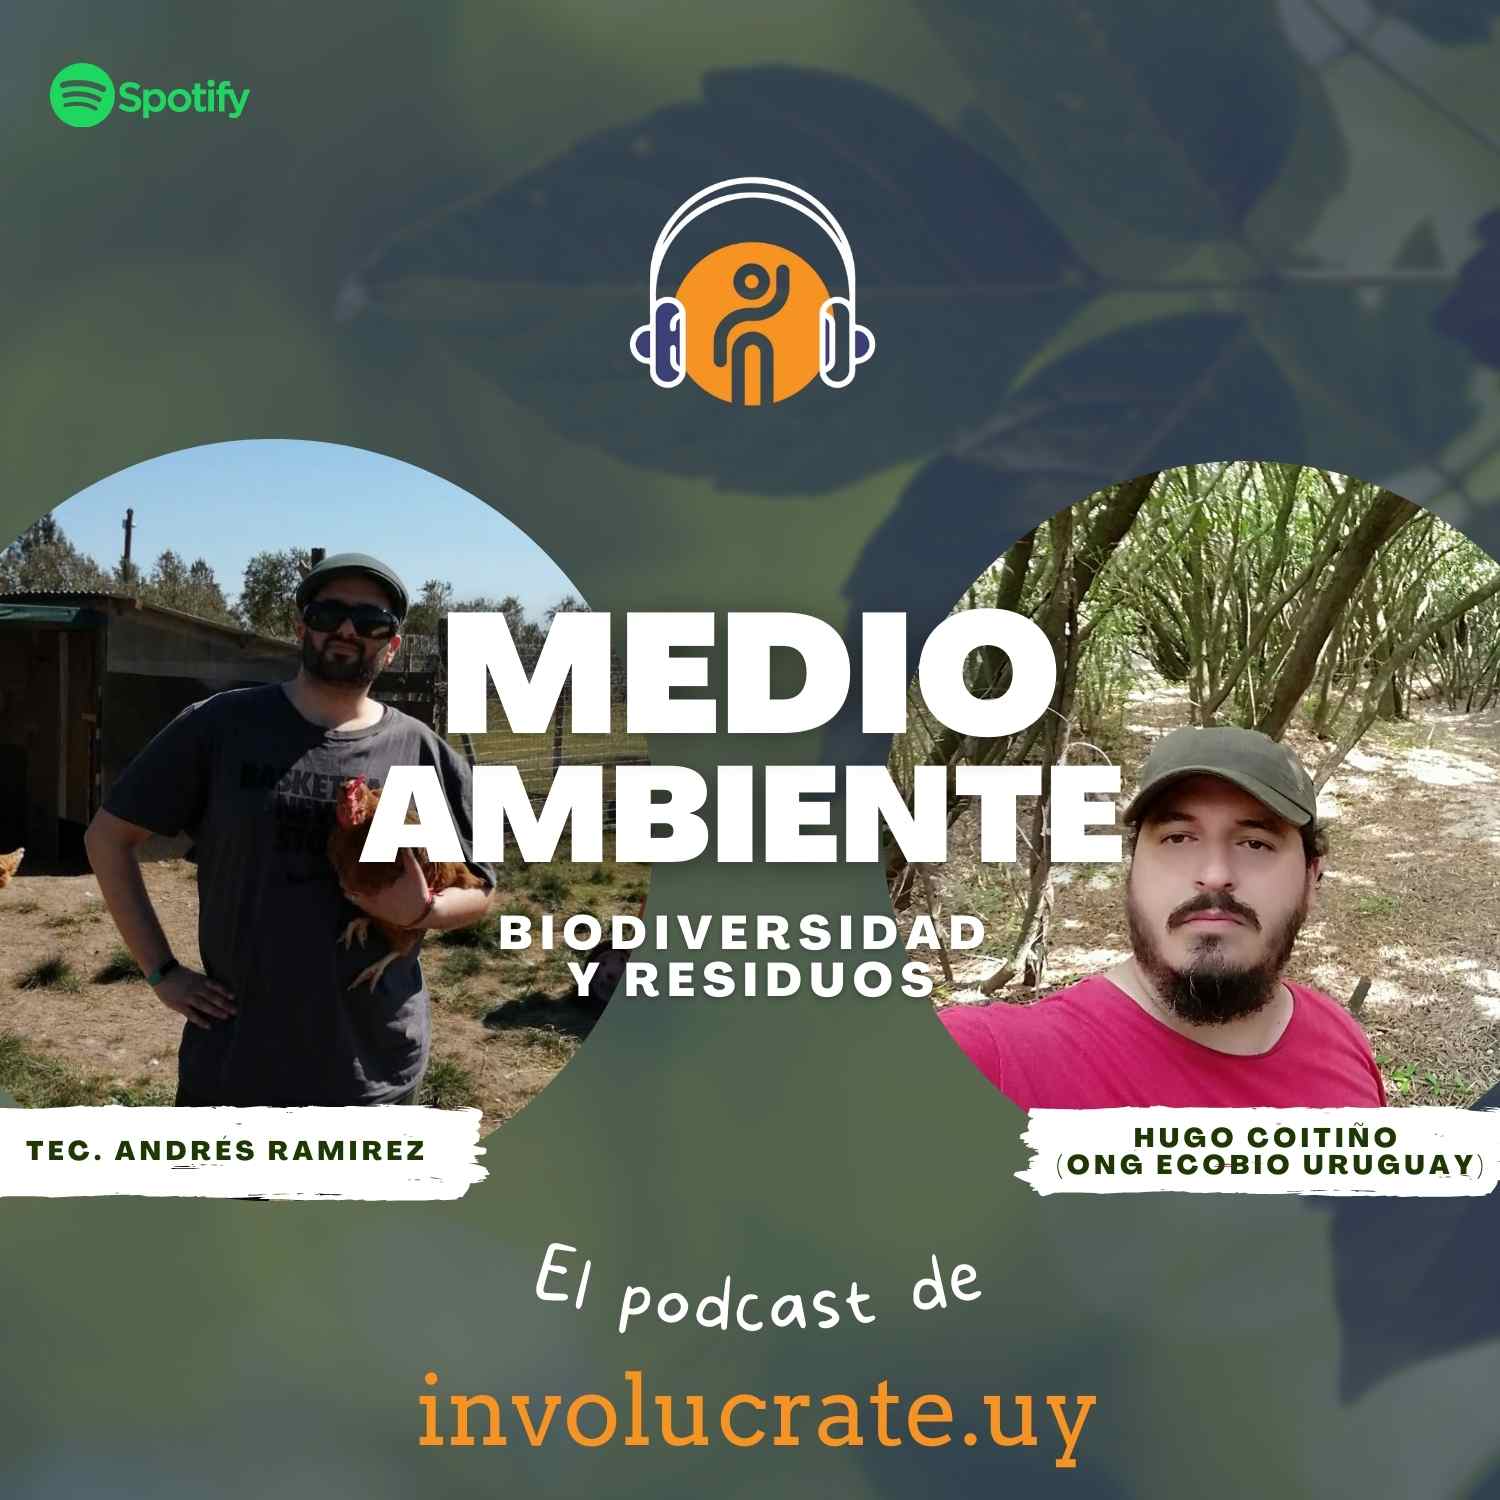 Biodiversidad en Uruguay – Ecobio